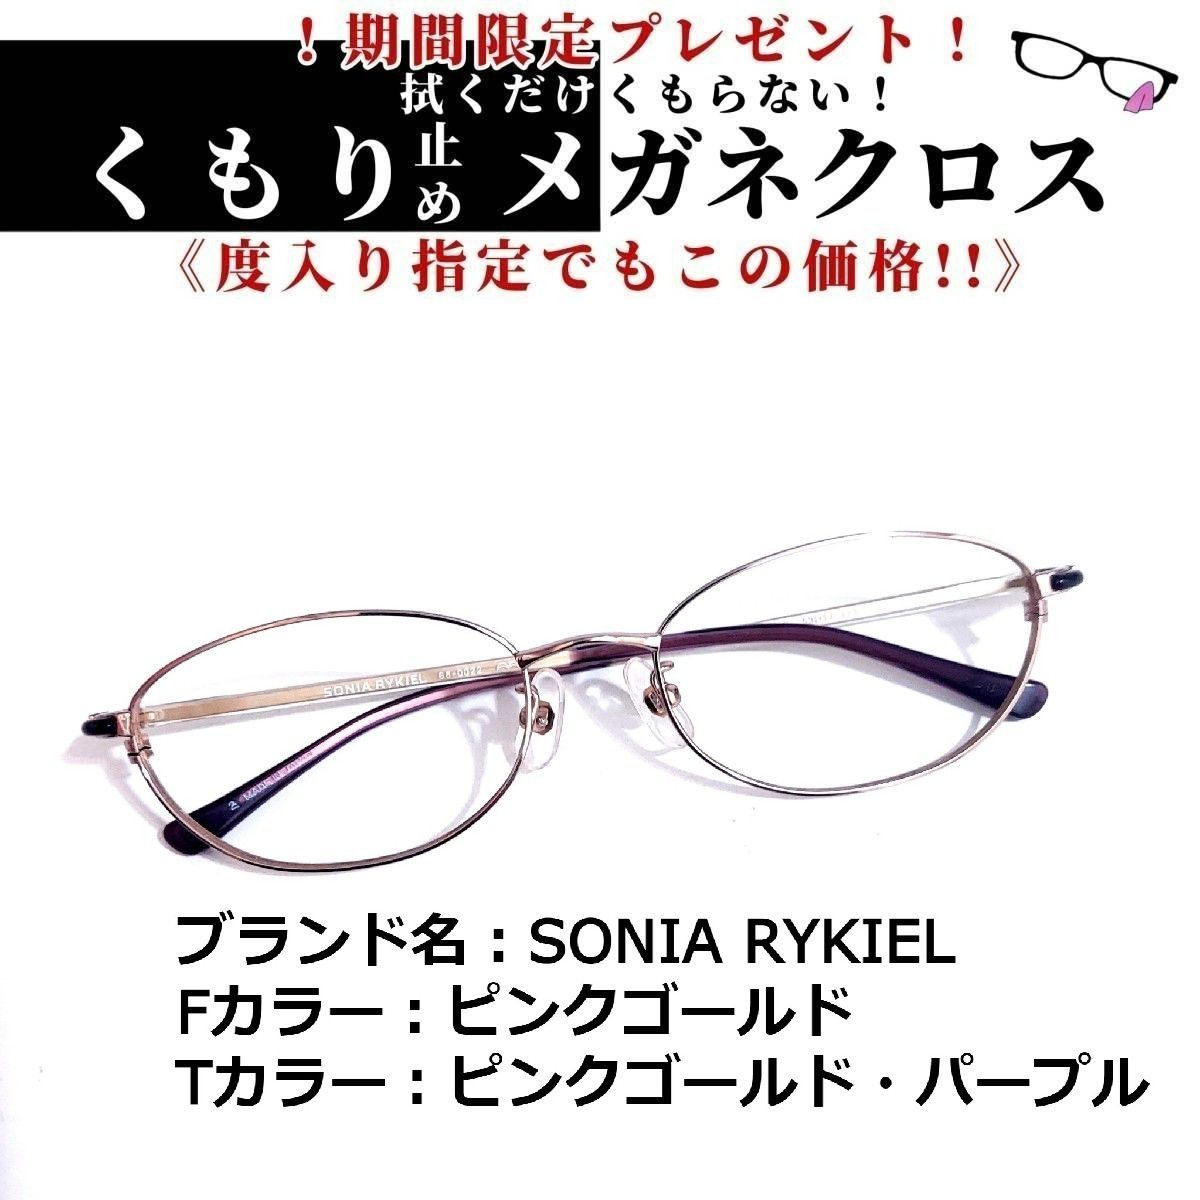 No.1527+メガネ SONIA RYKIEL【度数入り込み価格】 - スッキリ生活専門